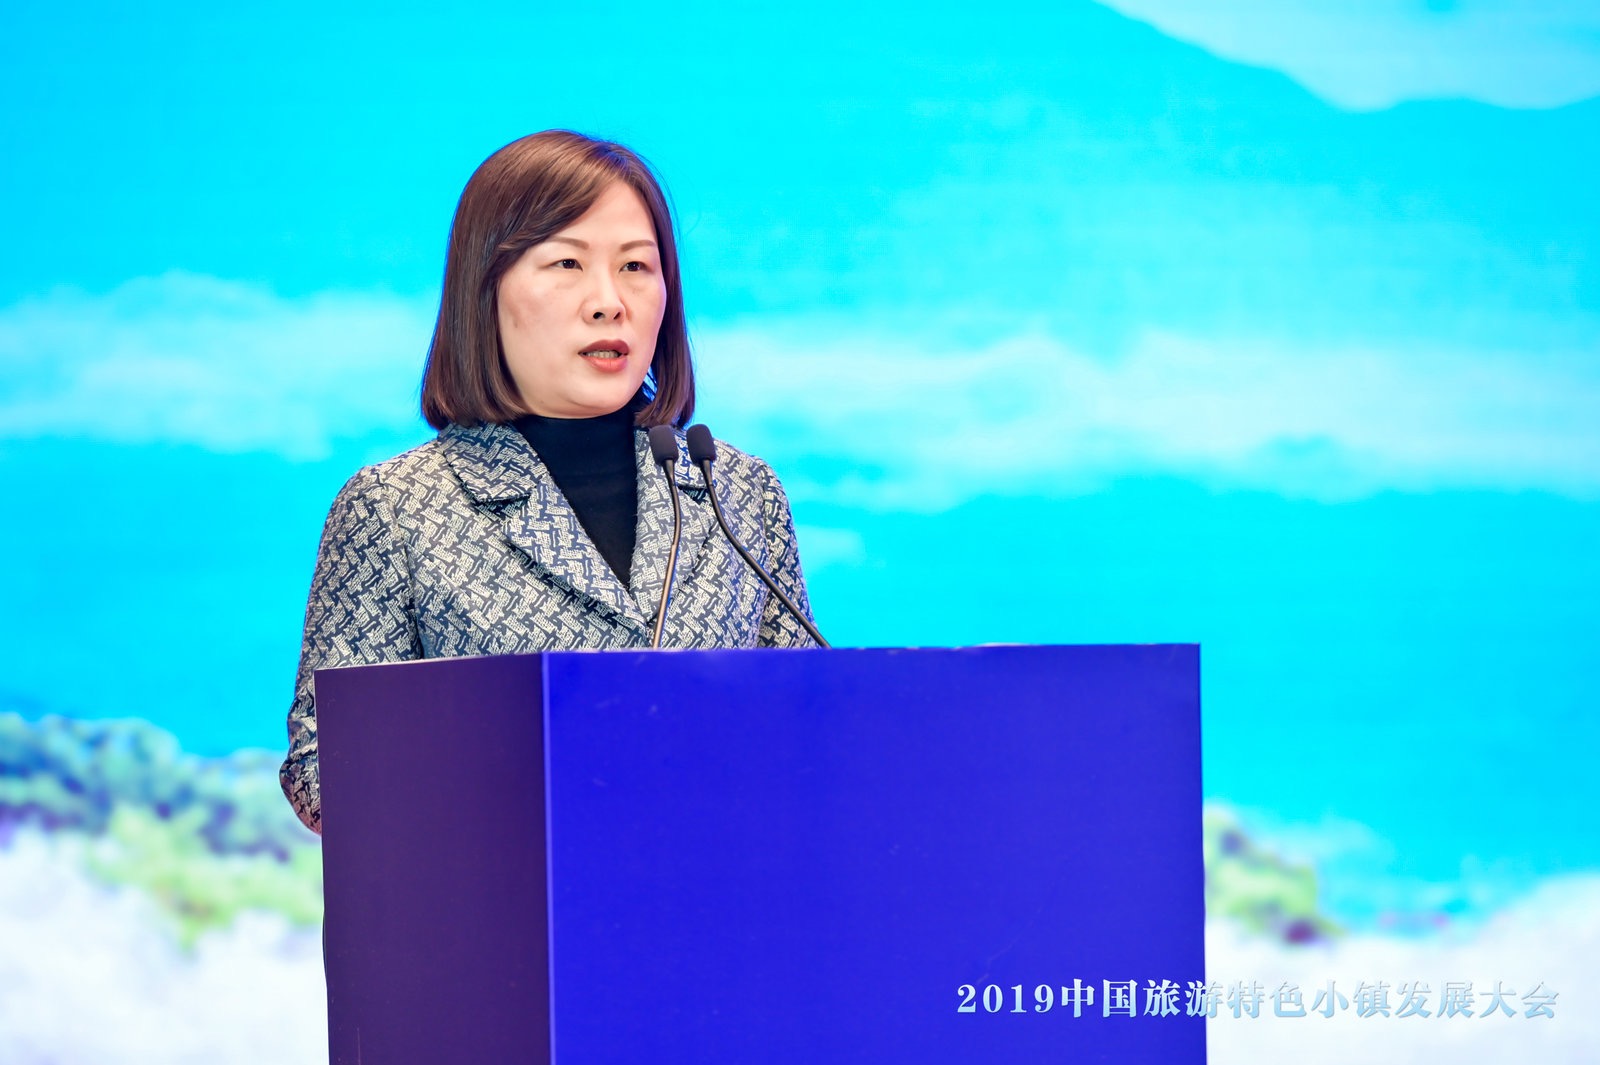 芜湖市副市长王芳:截至今年10月,芜湖旅游收入达到760